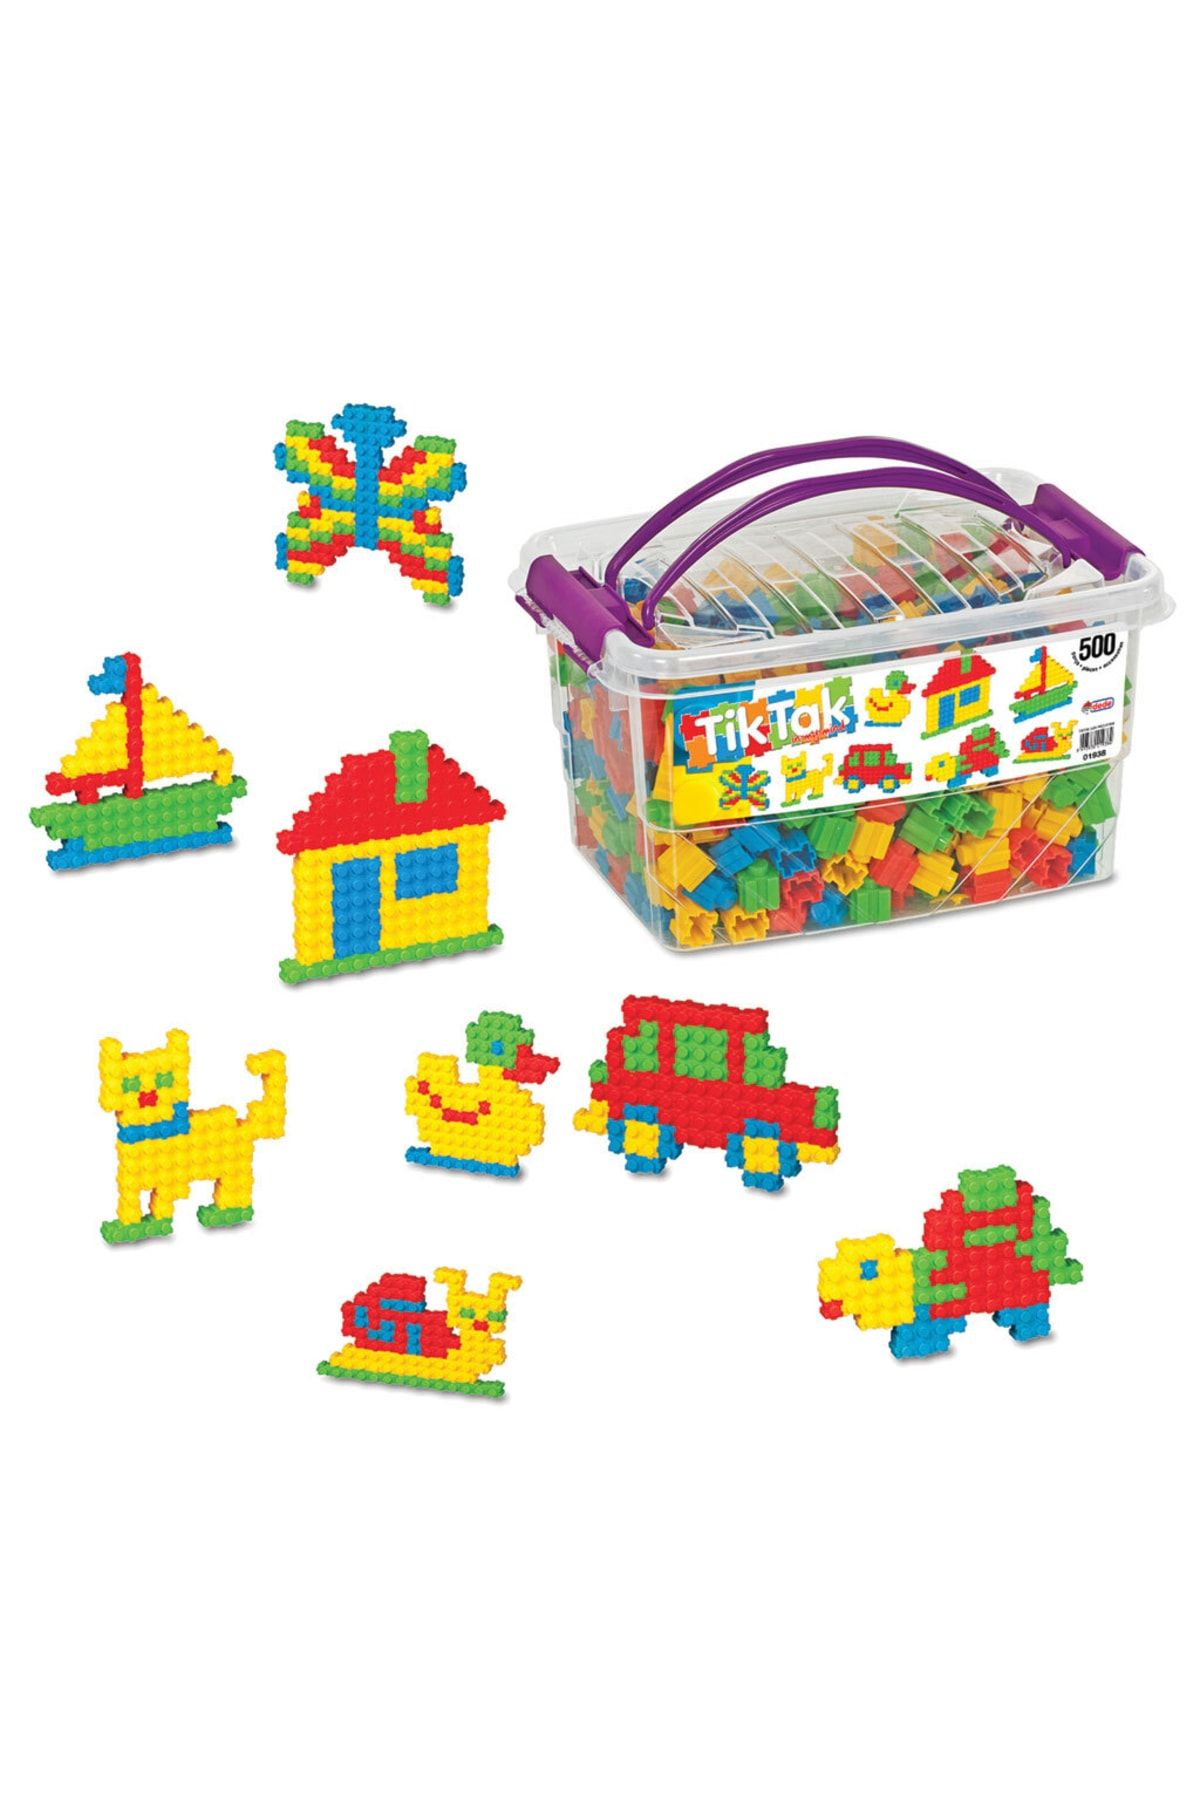 Doğan Oyuncak Dünyası Tik Tak Lego (500 Parça) - Tik Tak Lego - Lego Oyuncaklar - Yapı Oyuncakları - Tik Tak Puzzle